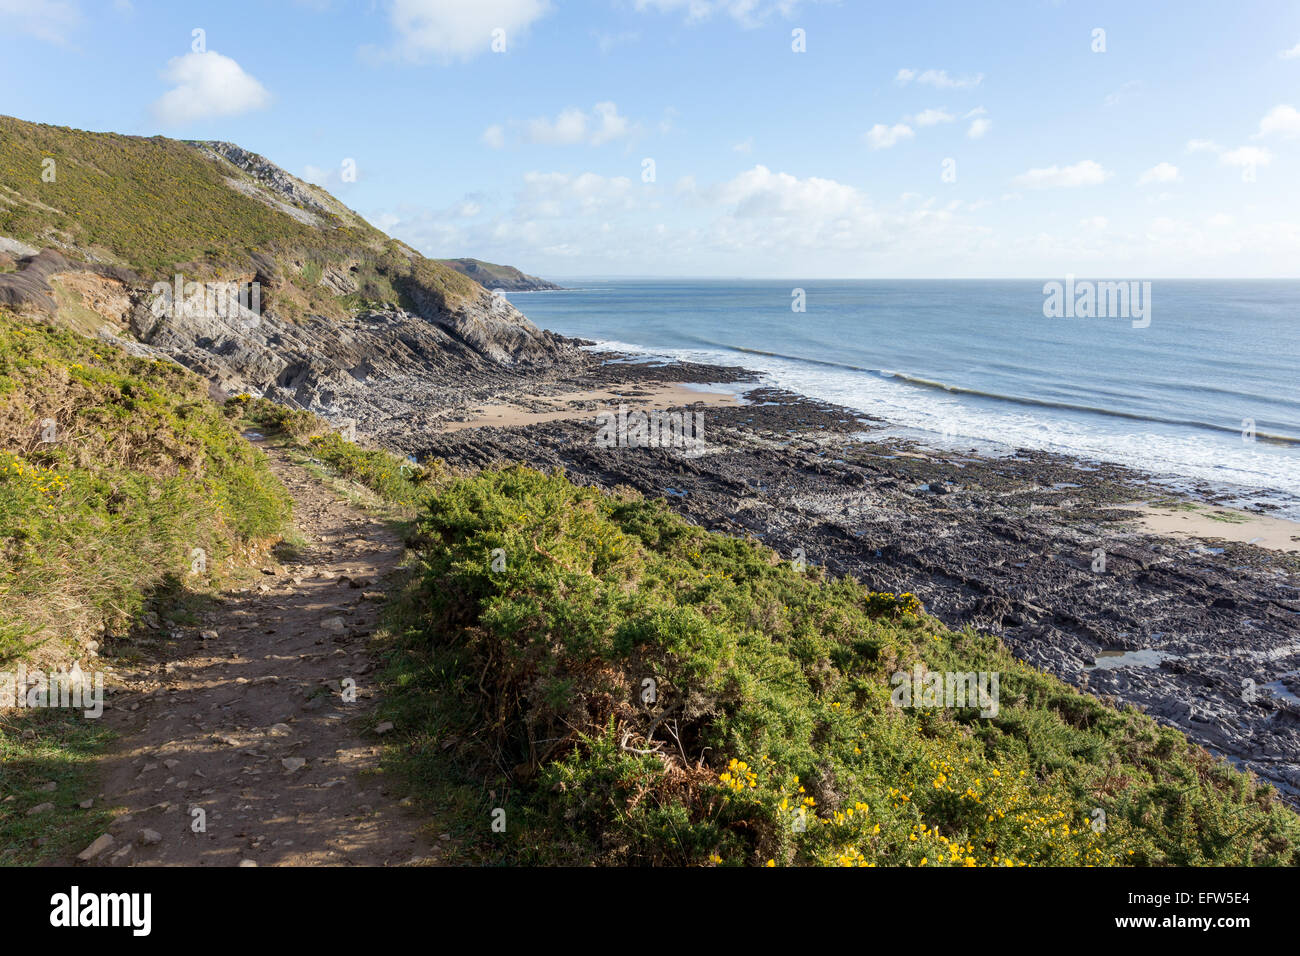 La piedra caliza carbonífera forma un pavimento de piedra caliza irregular en una playa al lado de la ruta de la costa de Gales, cerca de Caswell Bay, Gower. Foto de stock